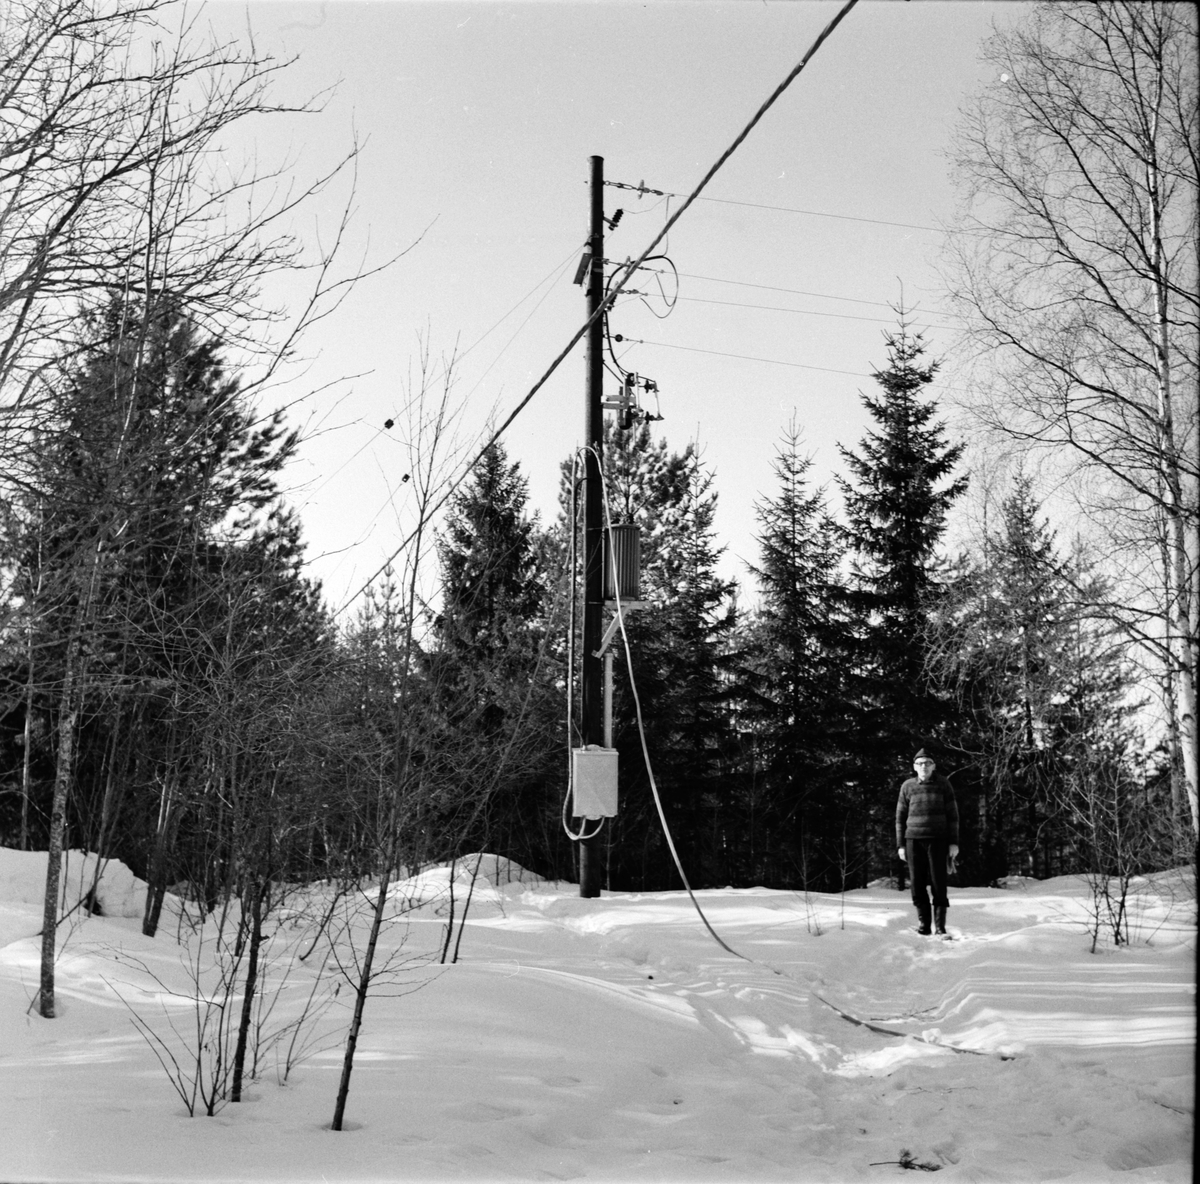 Undersvik,
Tomt i Offerberg,
Kraftverket,
Mars 1969